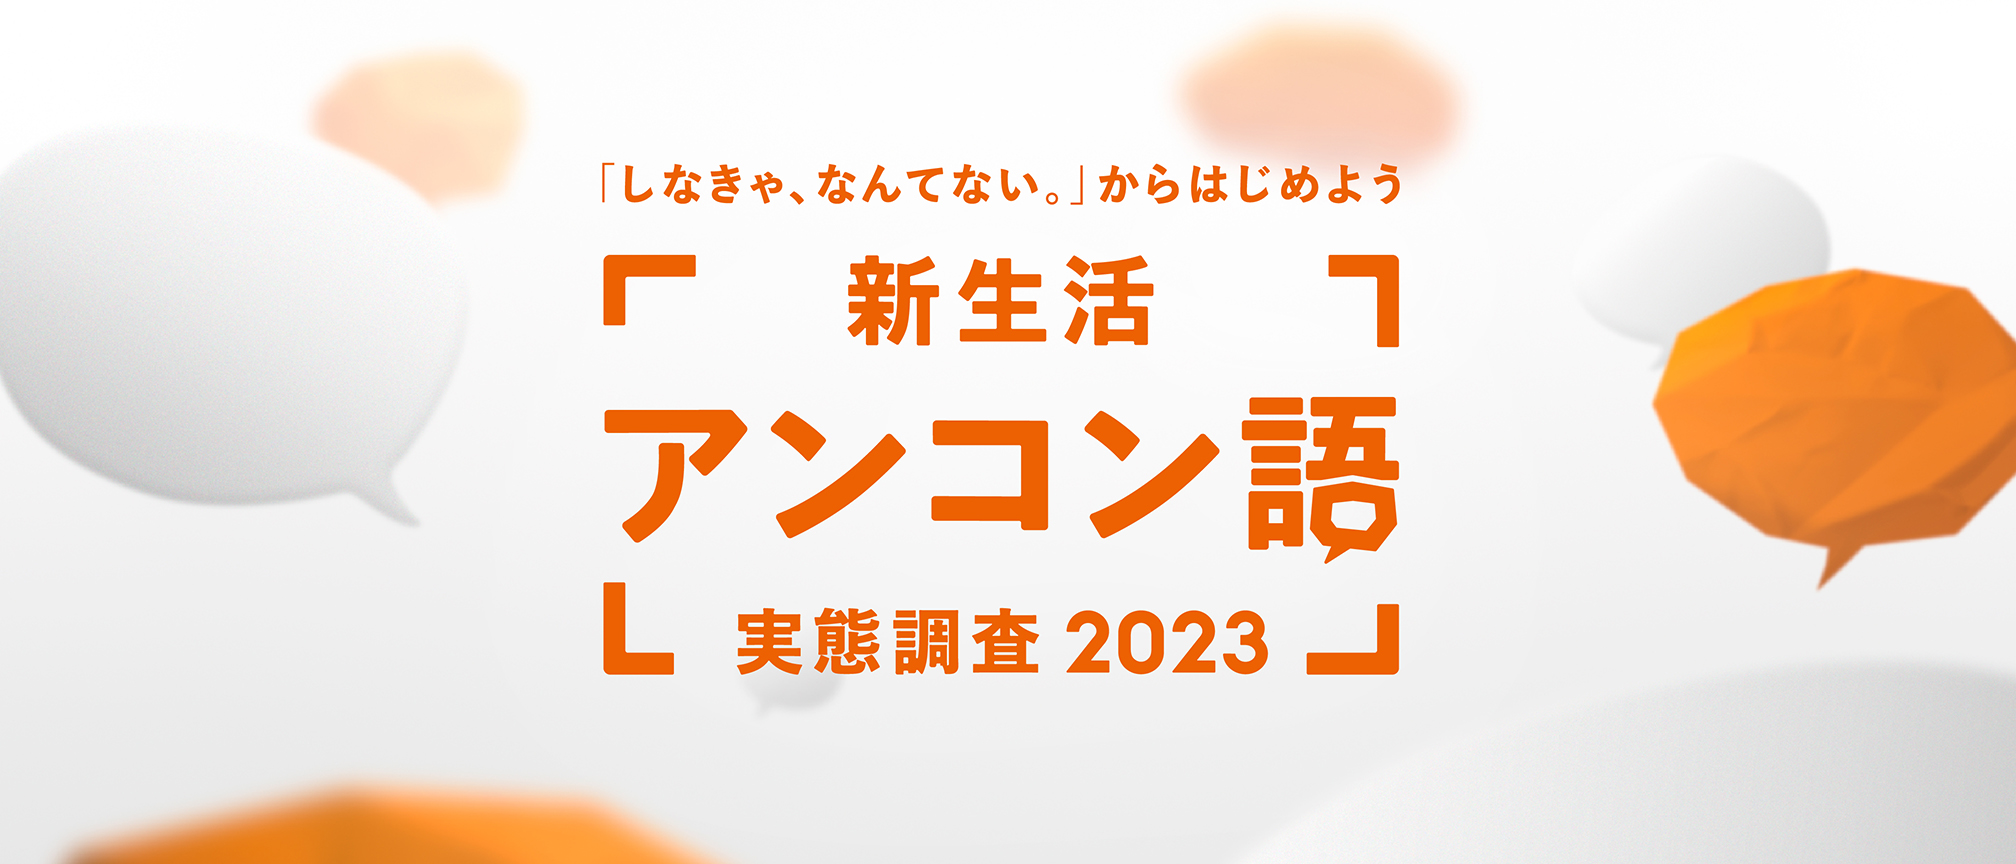 新生活アンコン語実態調査2023